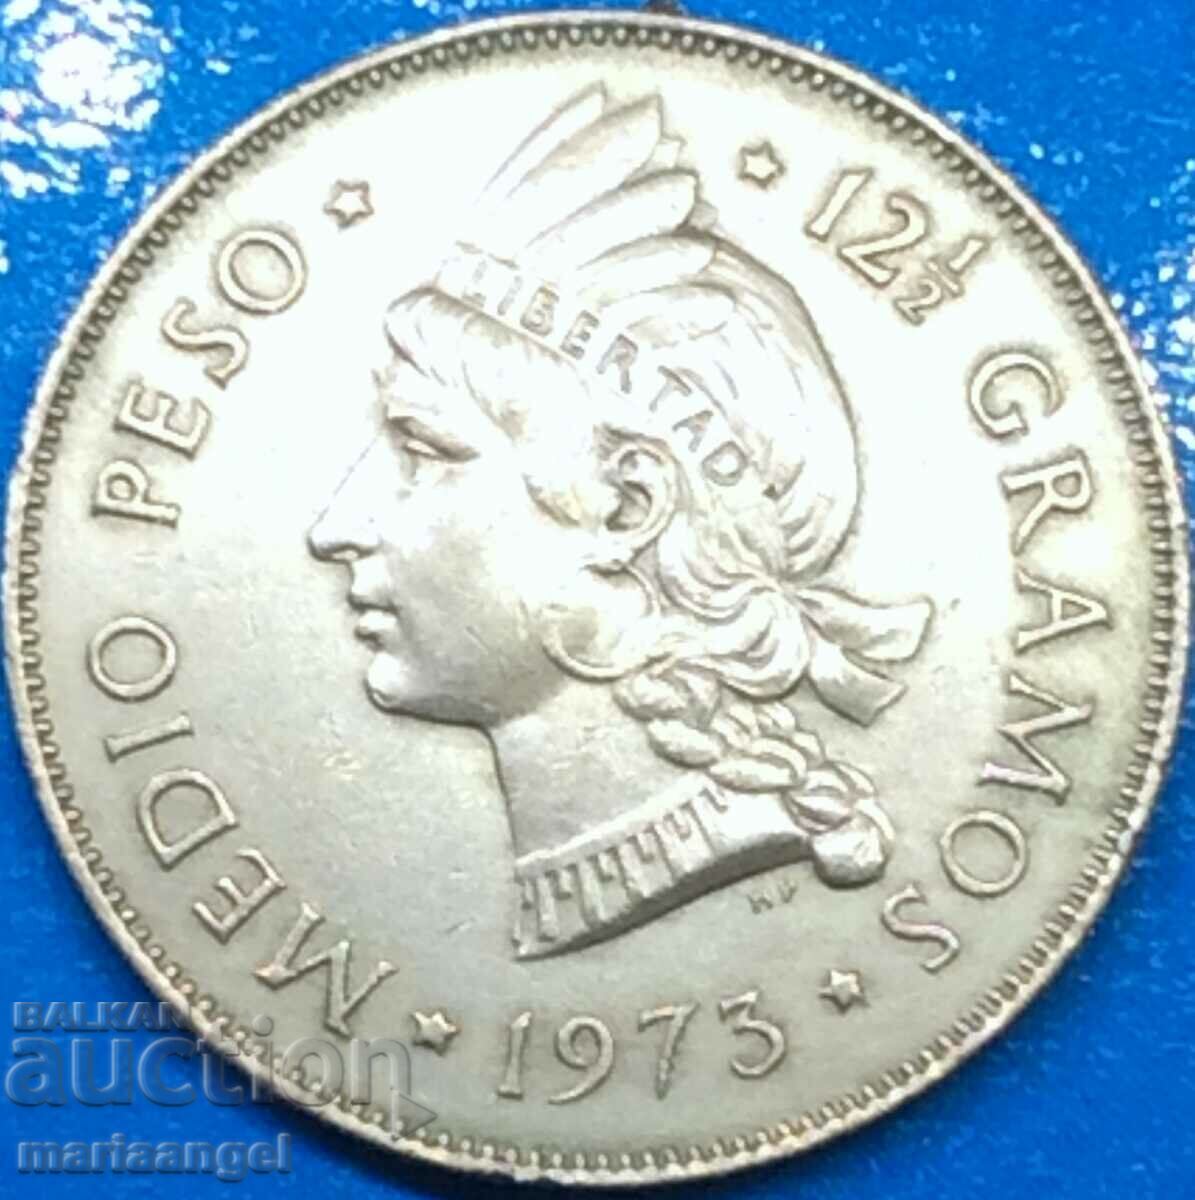 Dominican Republic 1/2 peso 1973 30mm 12.5g silver